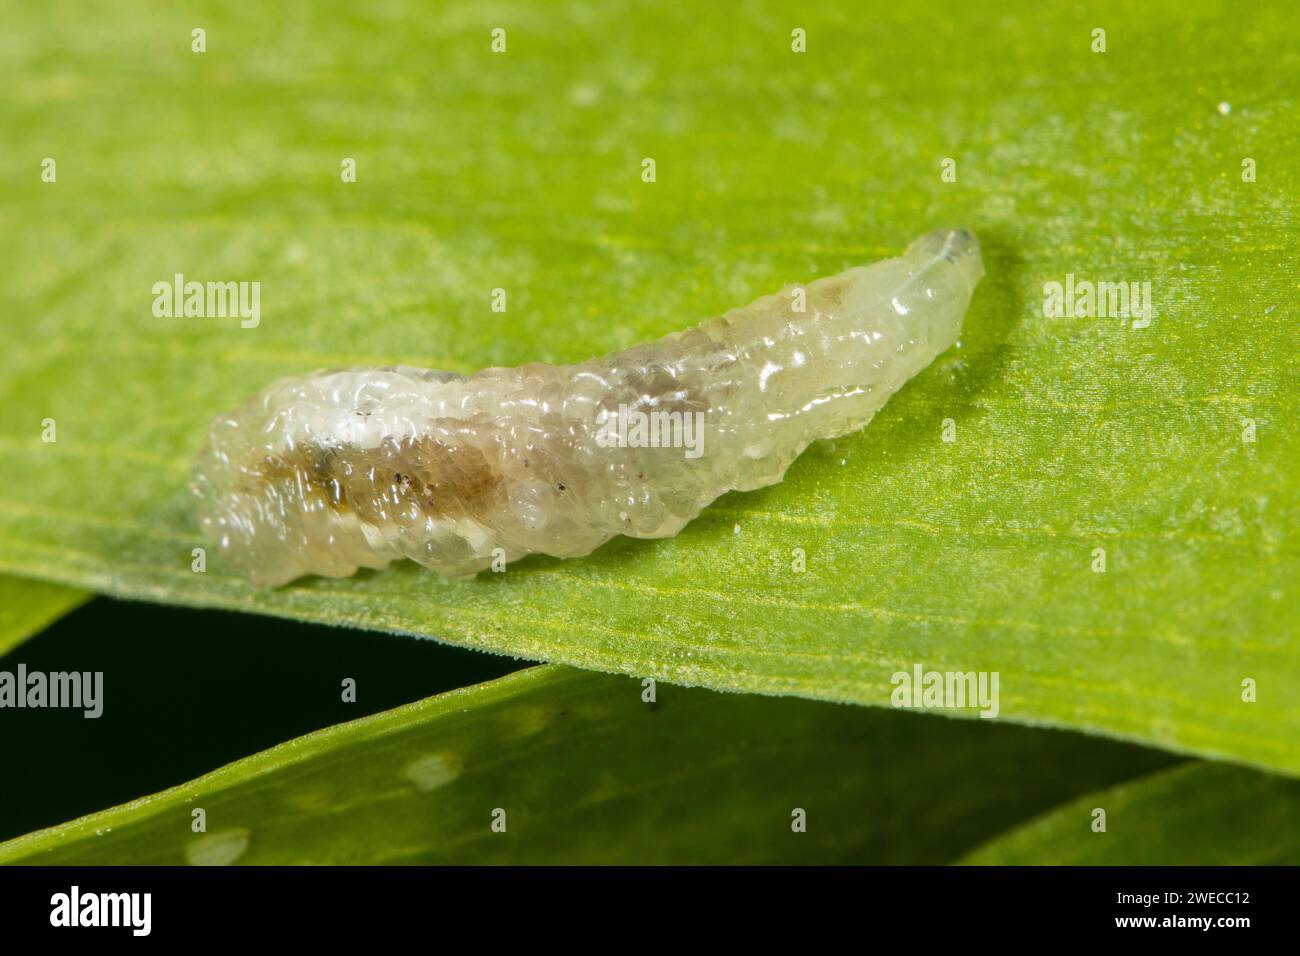 hoverflies, hover flies, syrphid flies, flower flies (Syrphidae), larva on leaf, Germany Stock Photo